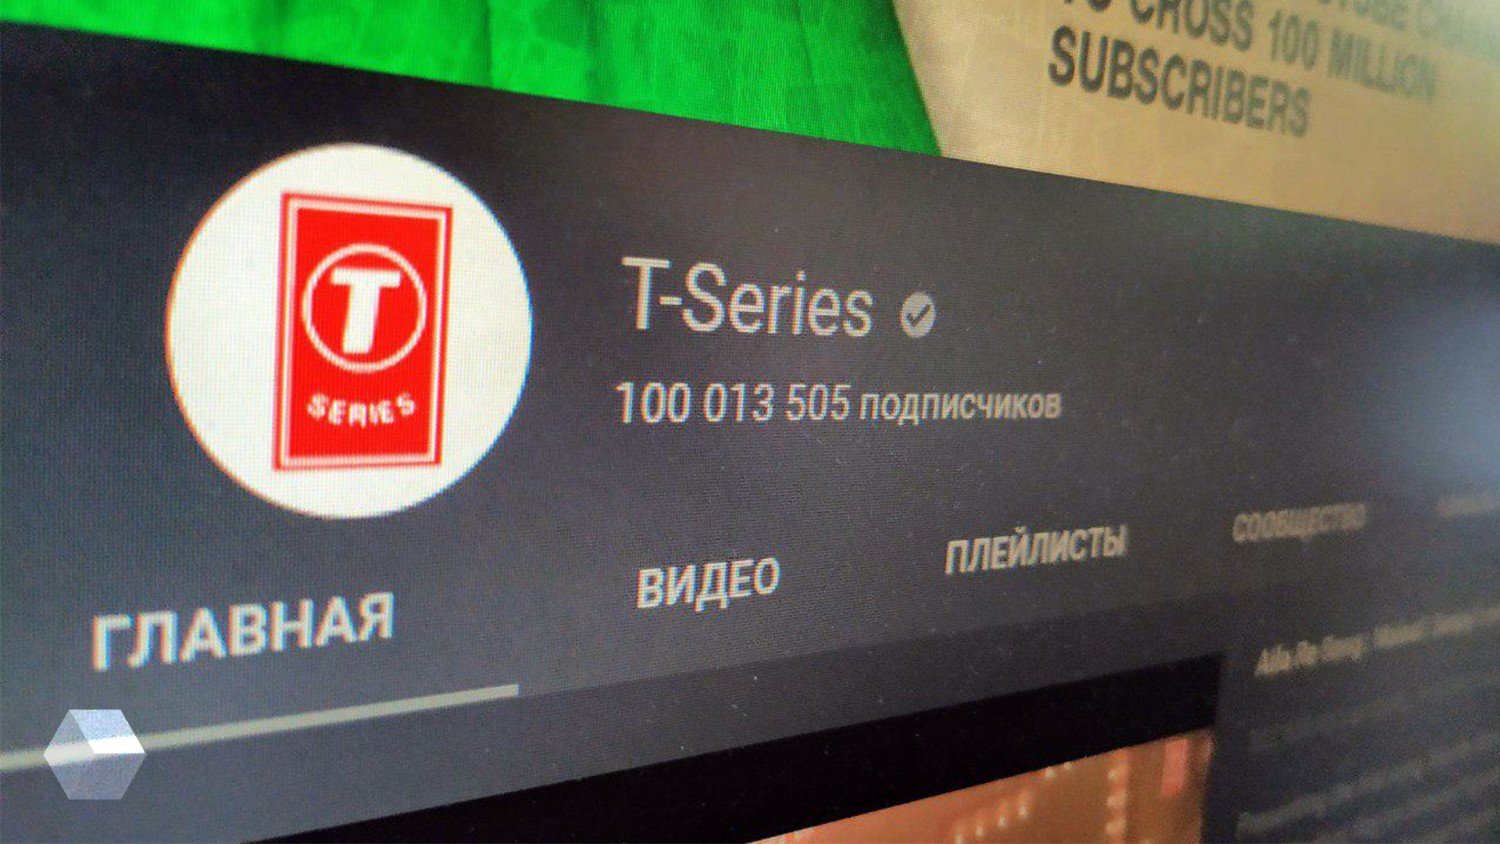 T-Series — первый канал на YouTube со 100 миллионами подписчиков